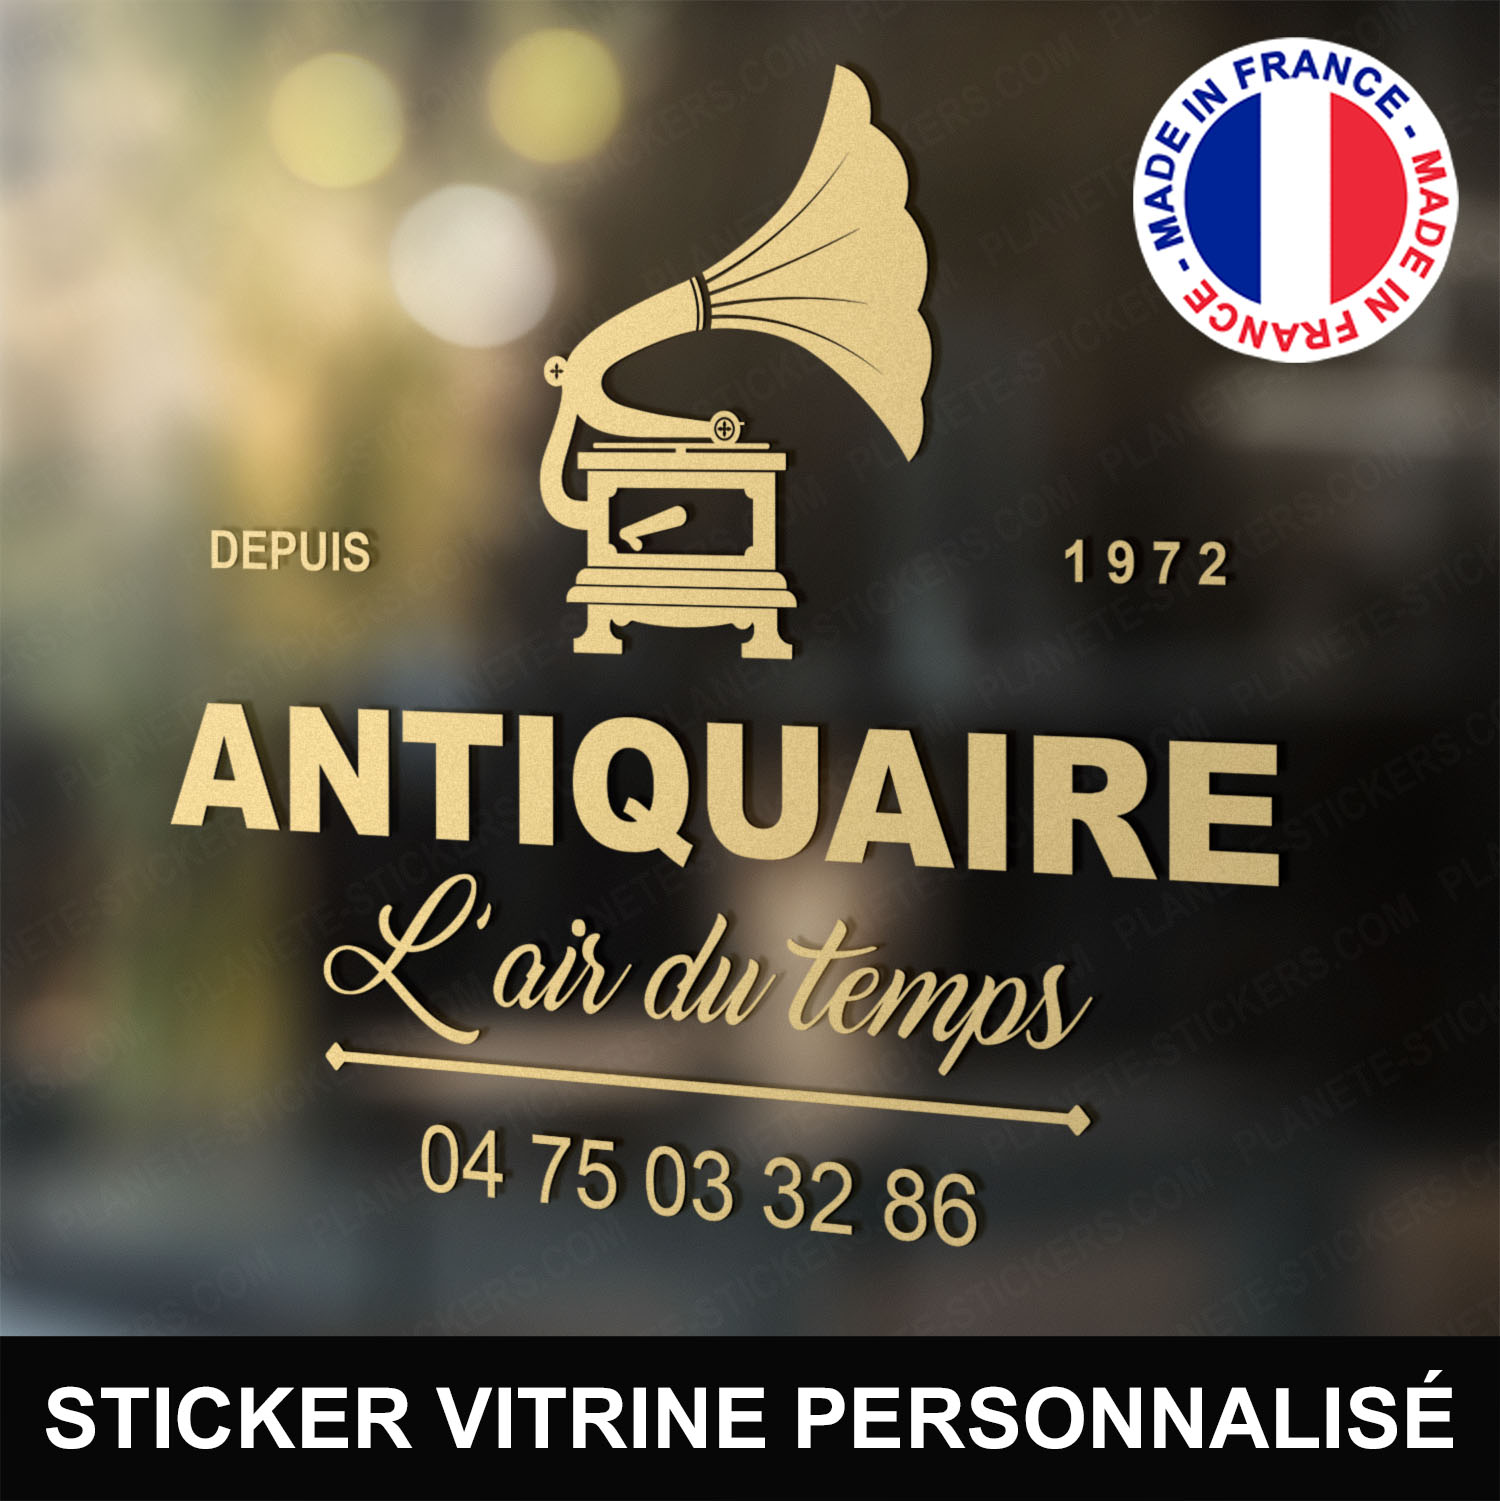 ref7antiquairevitrine-stickers-antiquaire-vitrine-sticker-personnalisé-autocollant-antiquité-vitrophanie-vitre-professionnel-logo-gramophone-tourne-disque